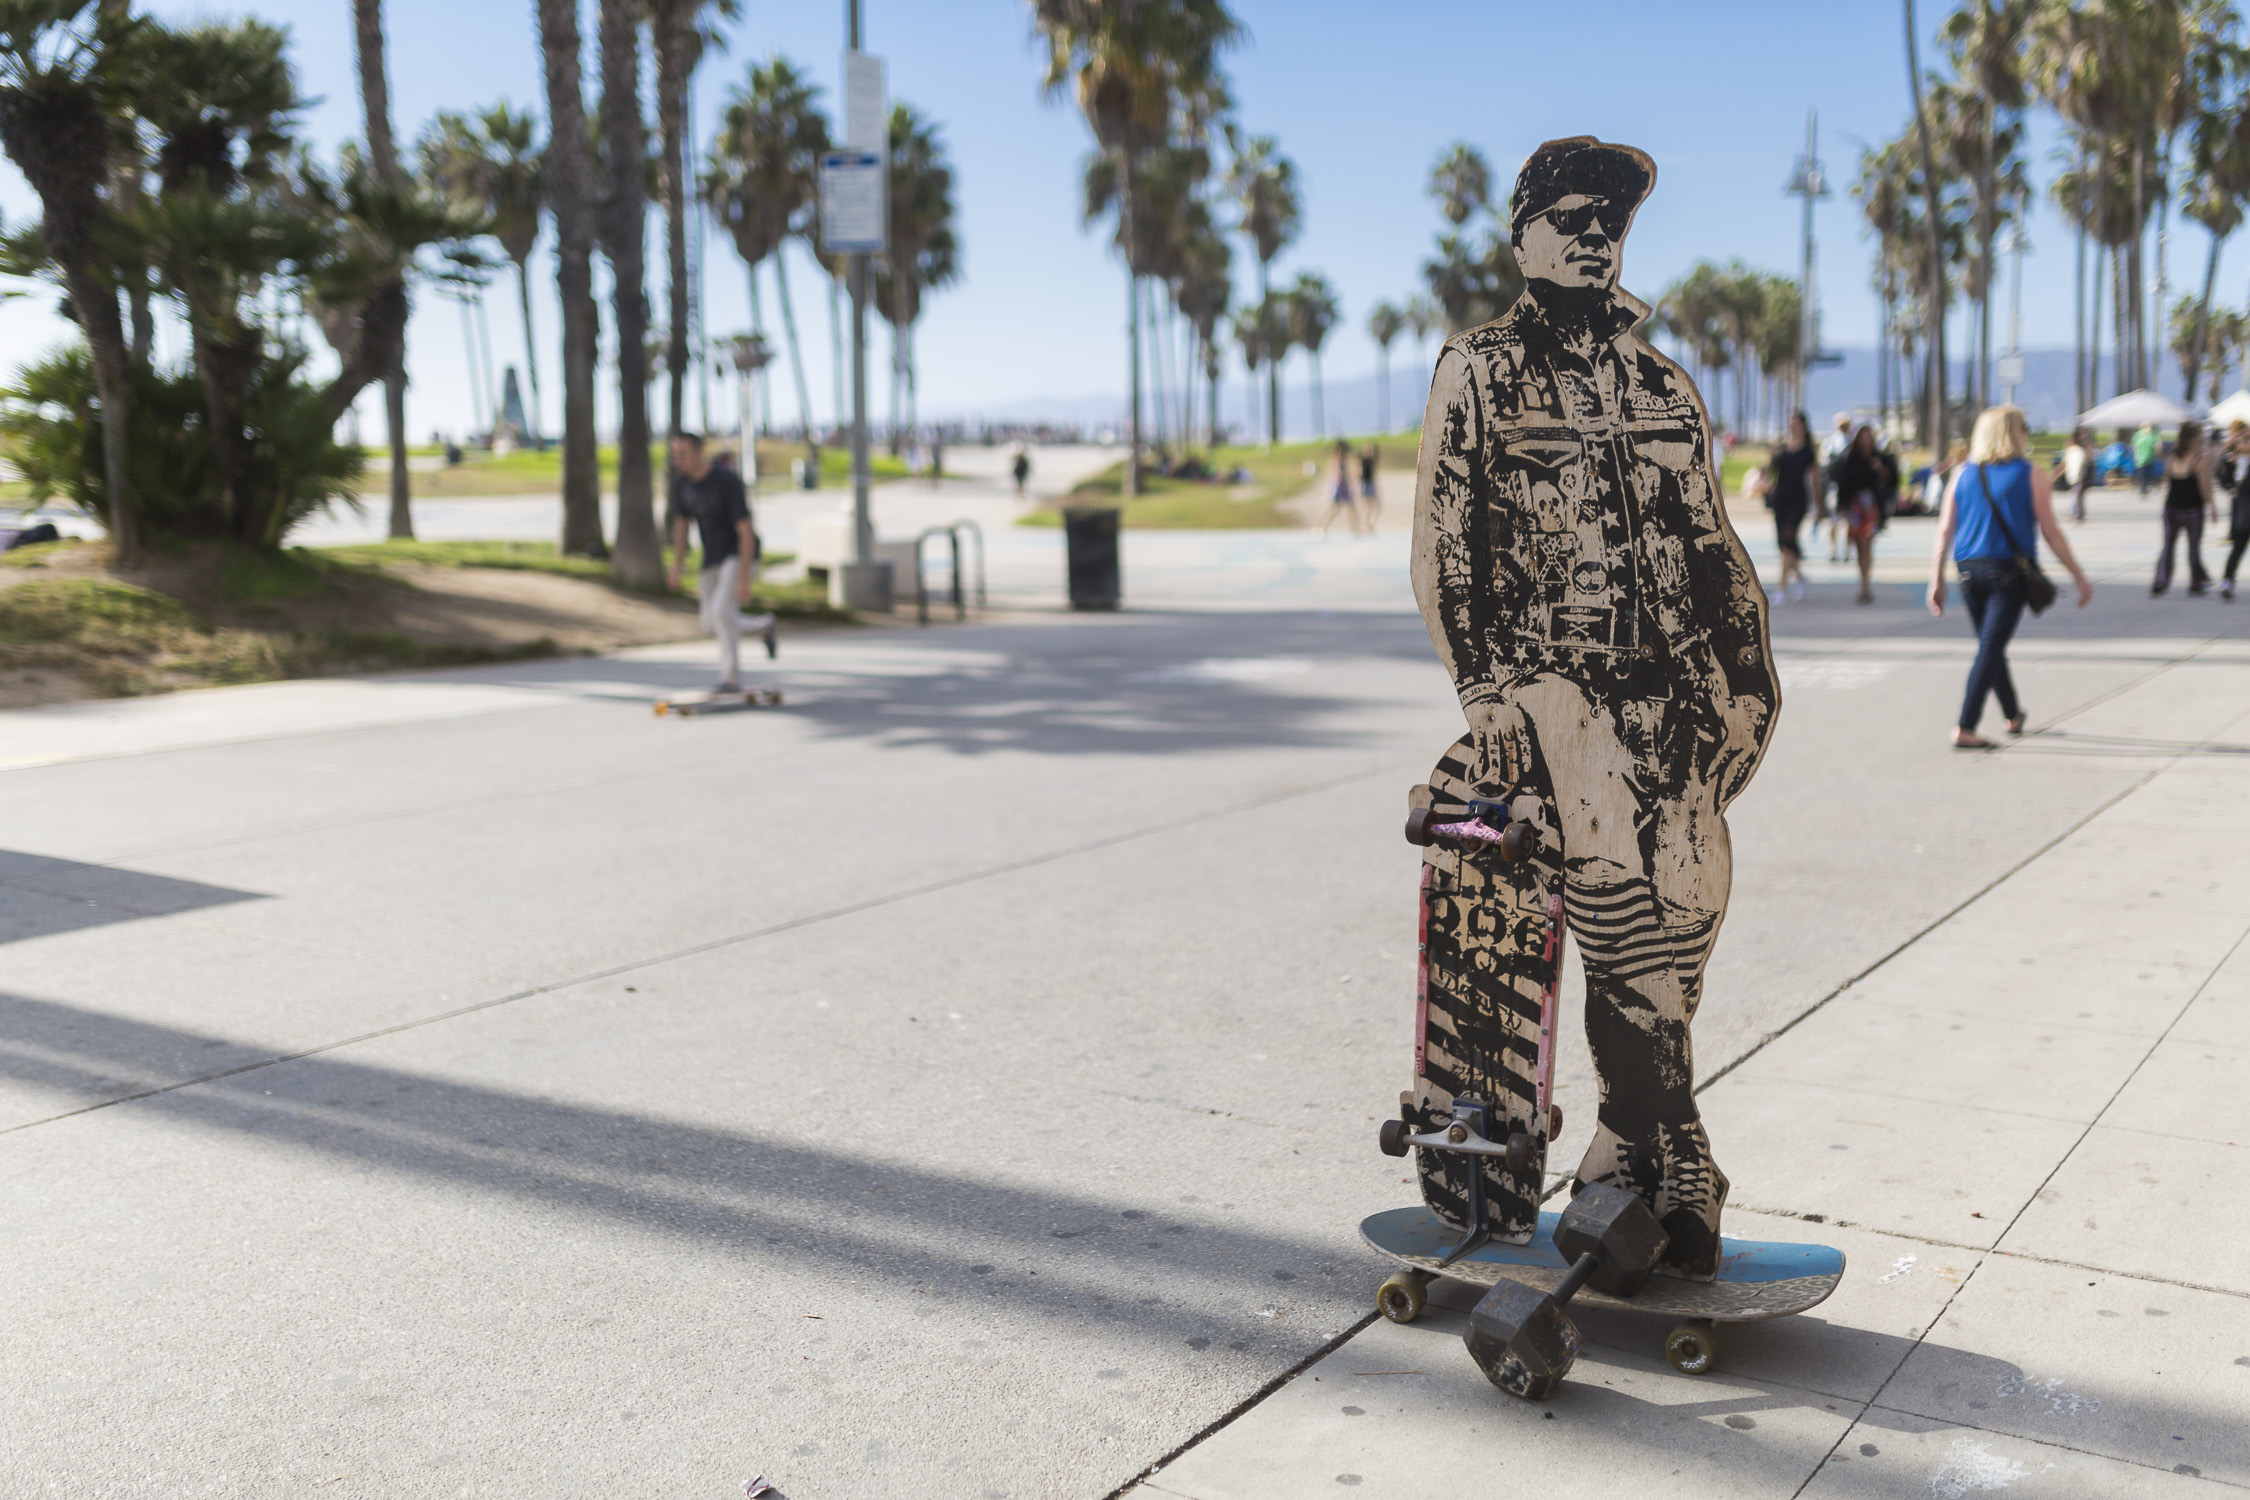 Portfolio(20151028 – Skater Venice Beach Skate Park – 4)